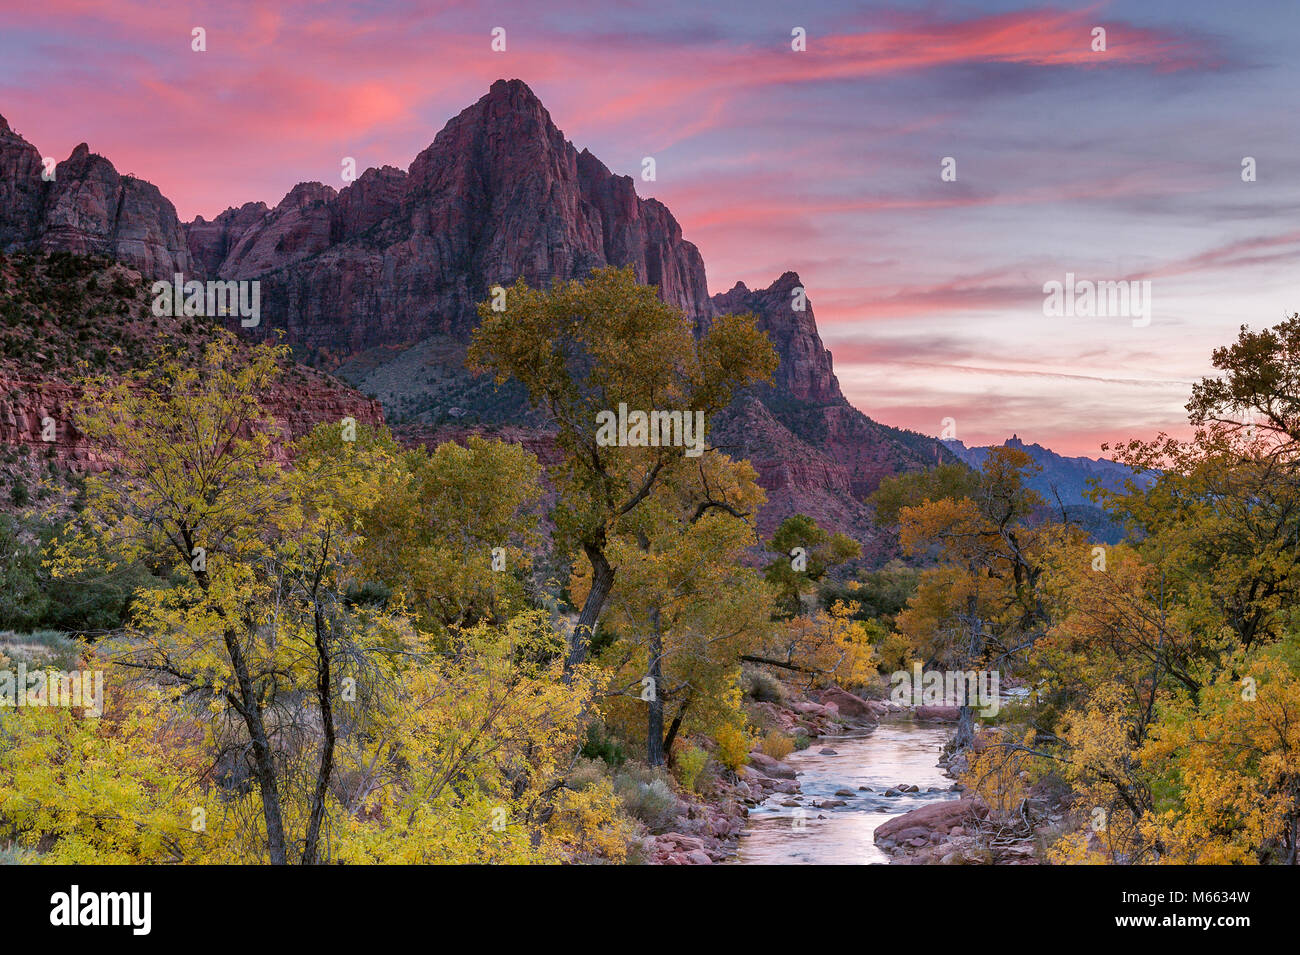 Crépuscule, la Sentinelle, Virgin River, Zion National Park, Utah Banque D'Images